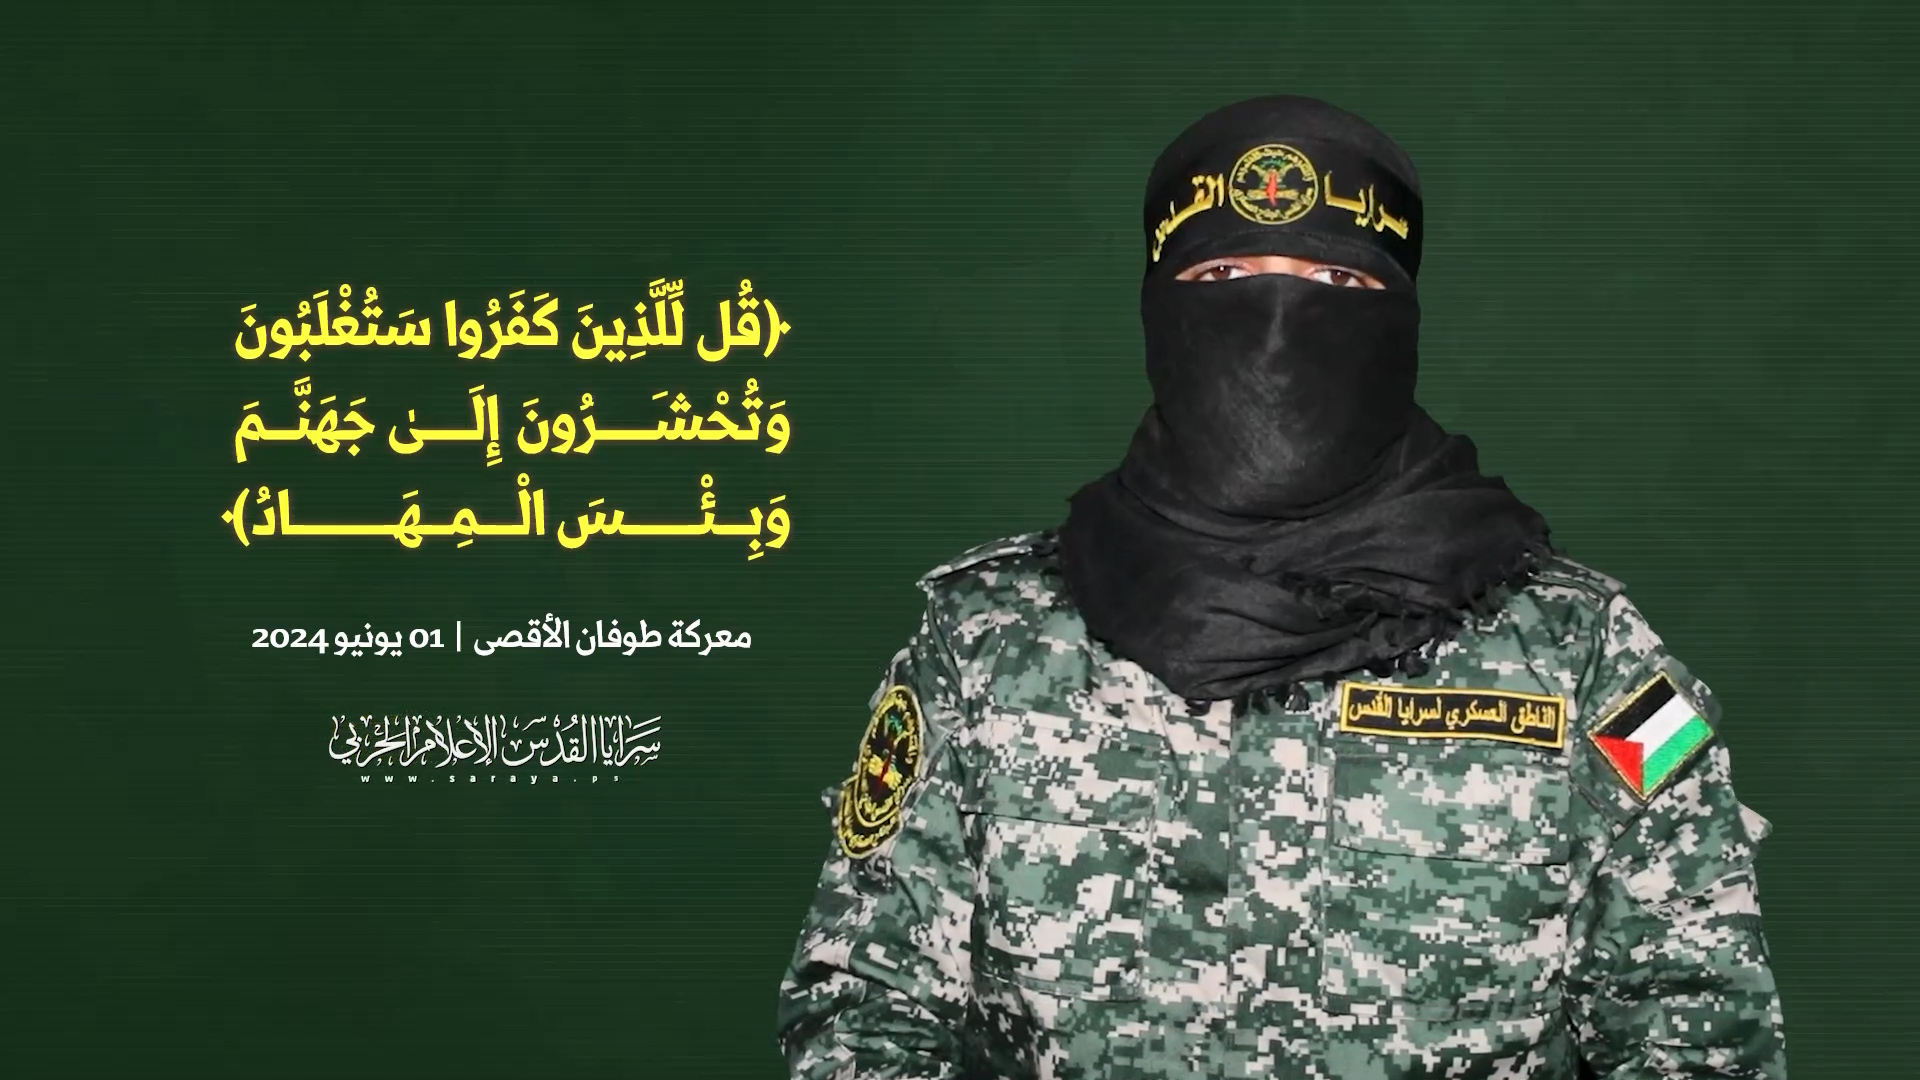 بالفيديو | أبو حمزة: نخوض حرباً وجودية وحرب الاستنزاف لن تكون إلا حسرة للعدو